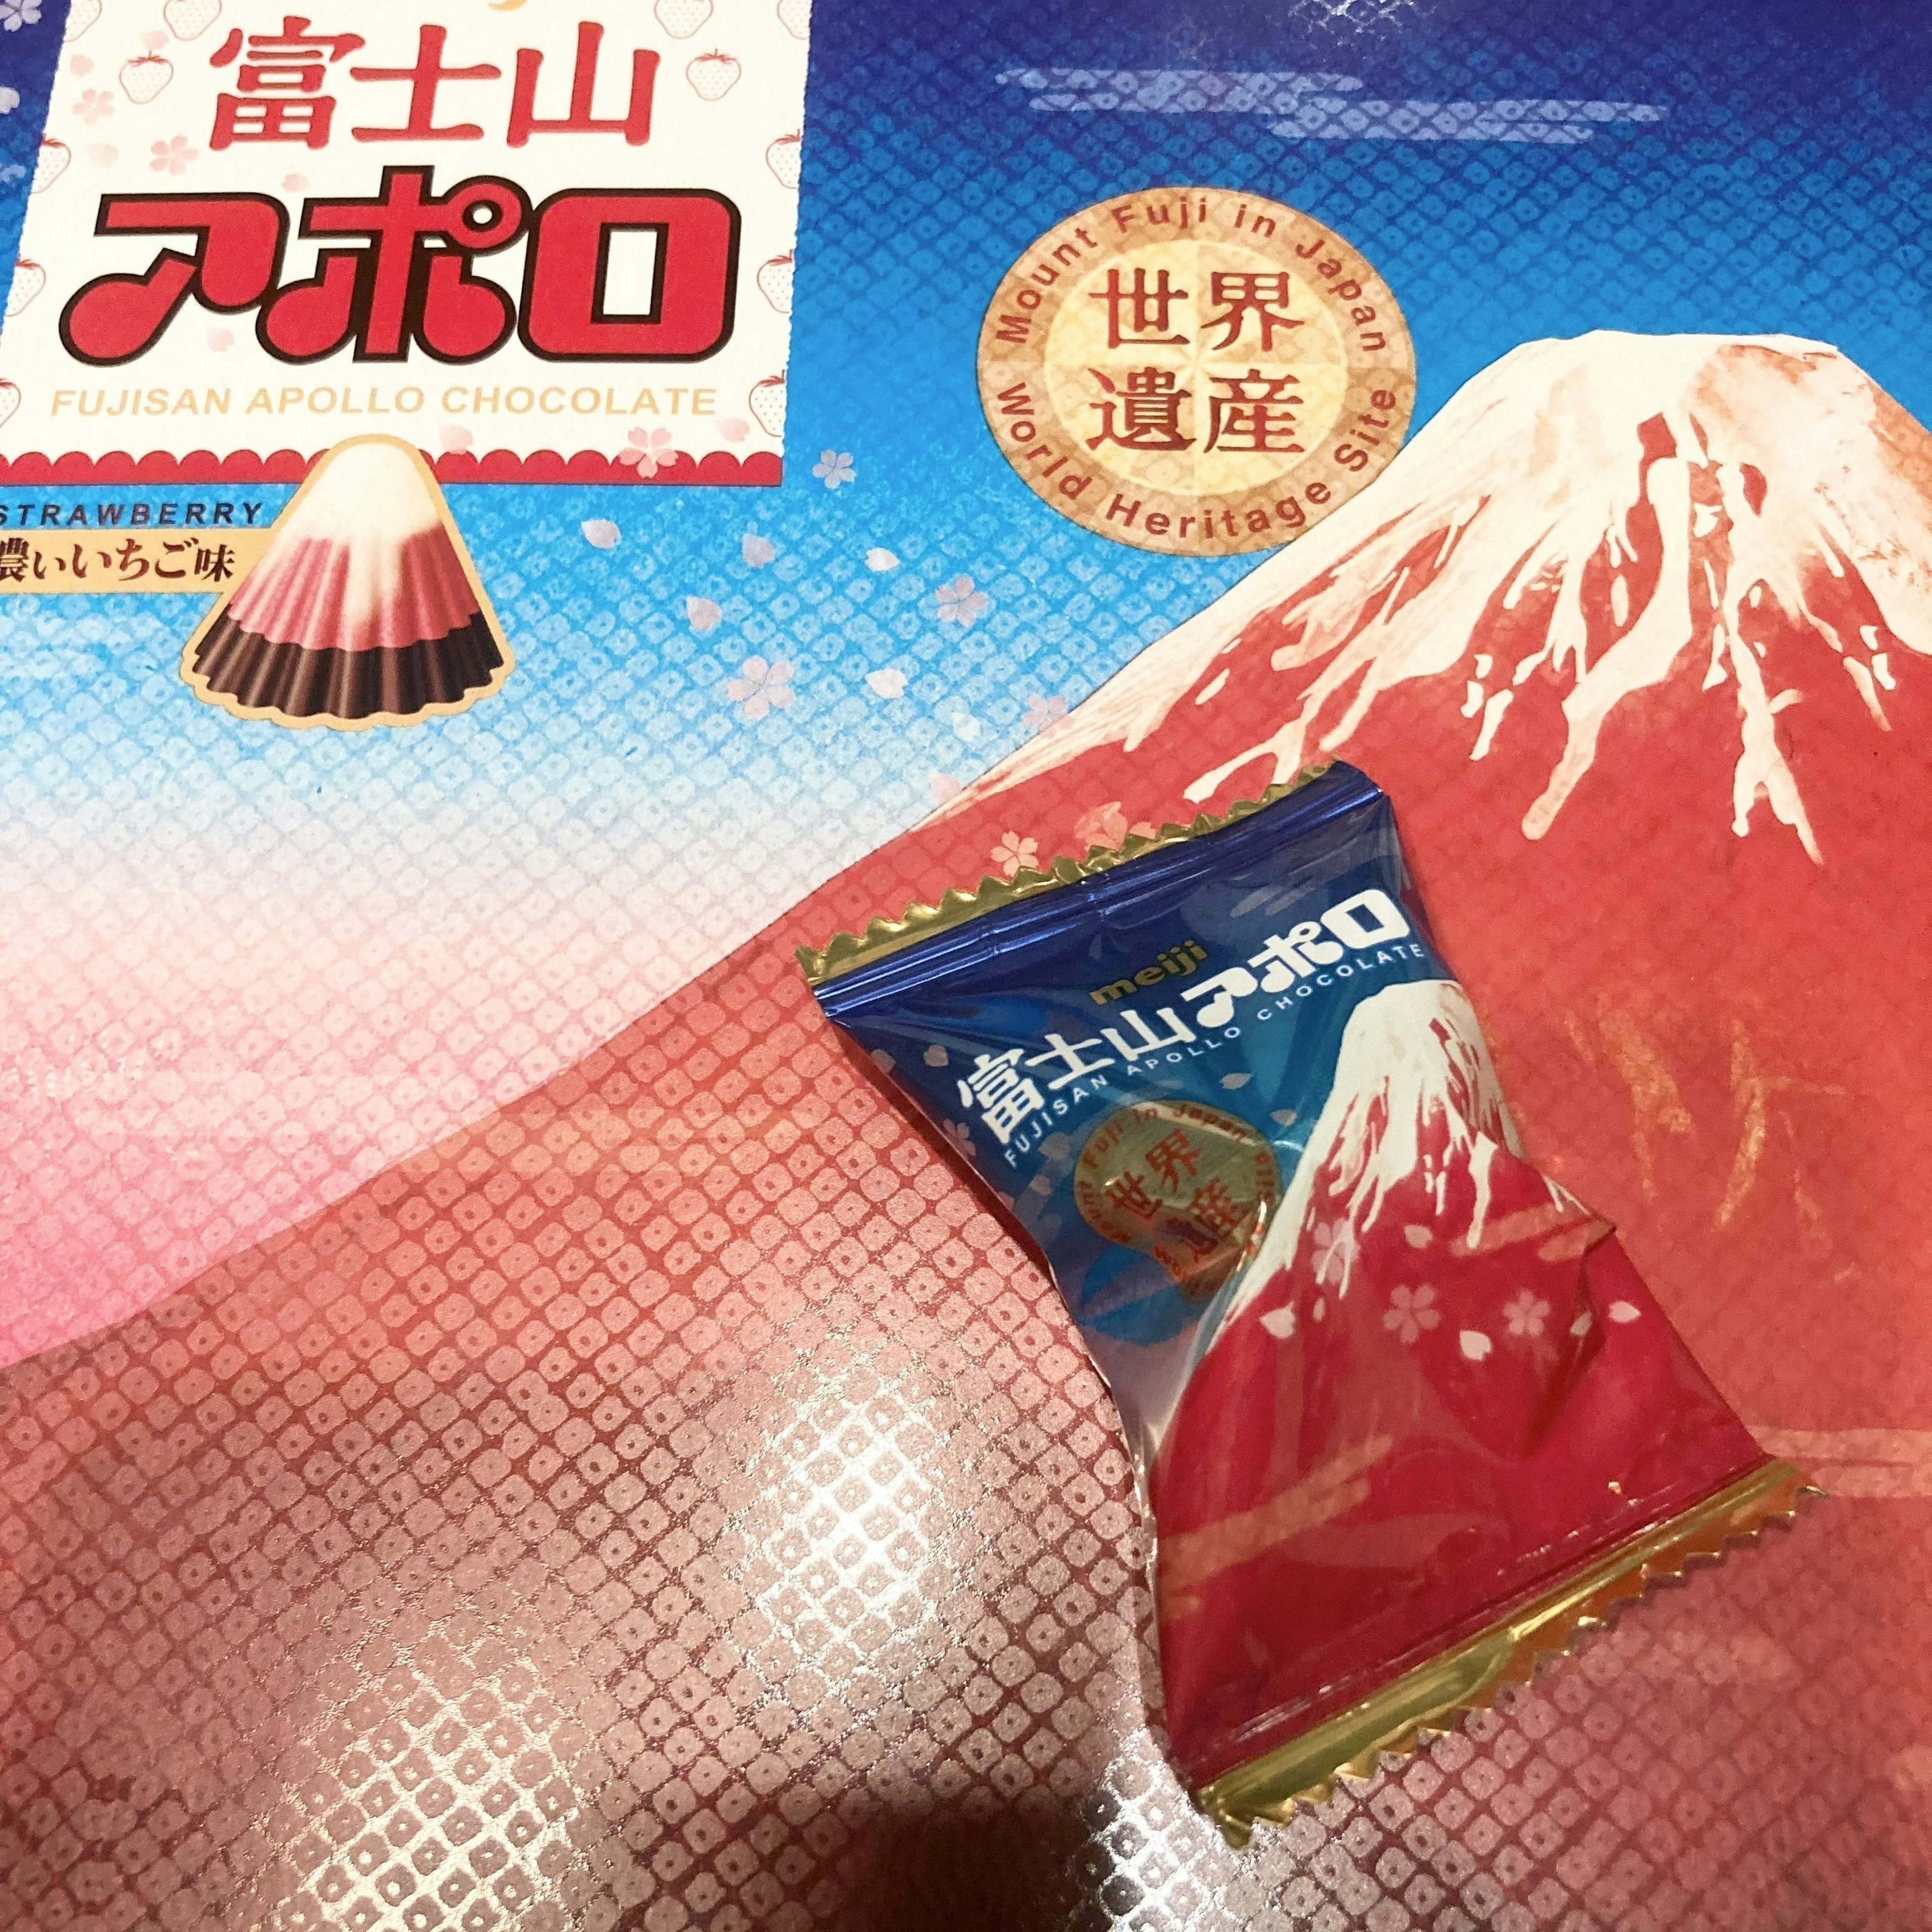 明治「富士山アポロ」の箱と山梨と静岡